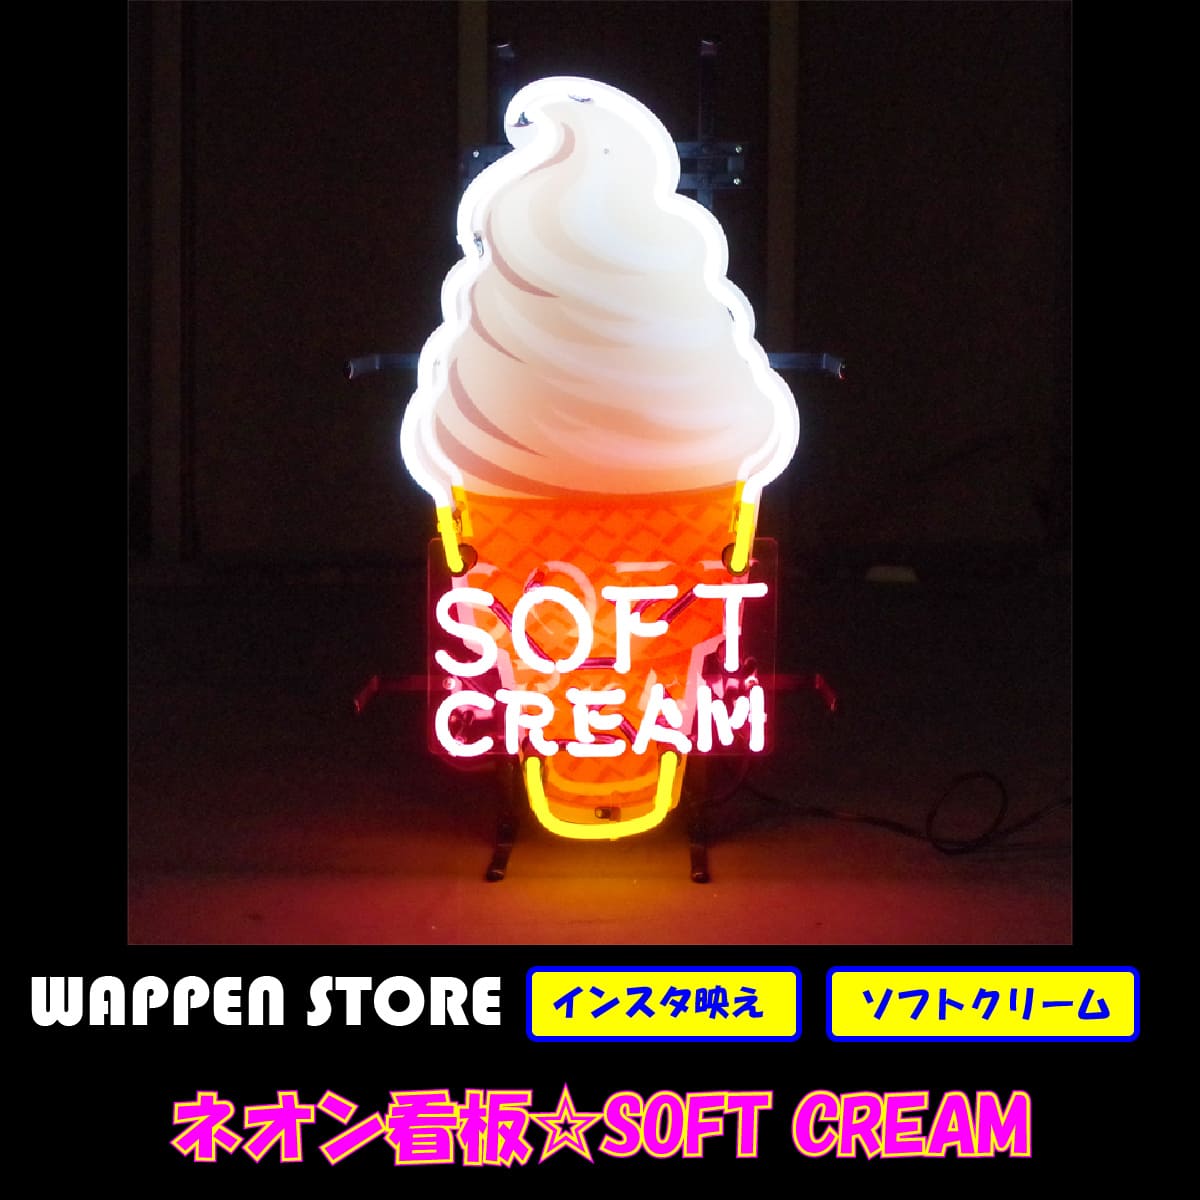 魅力的な アメリカンインテリアの定番 ネオンサイン Cream Soft Sign Neon ネオン管 ソフトクリーム 屋外照明